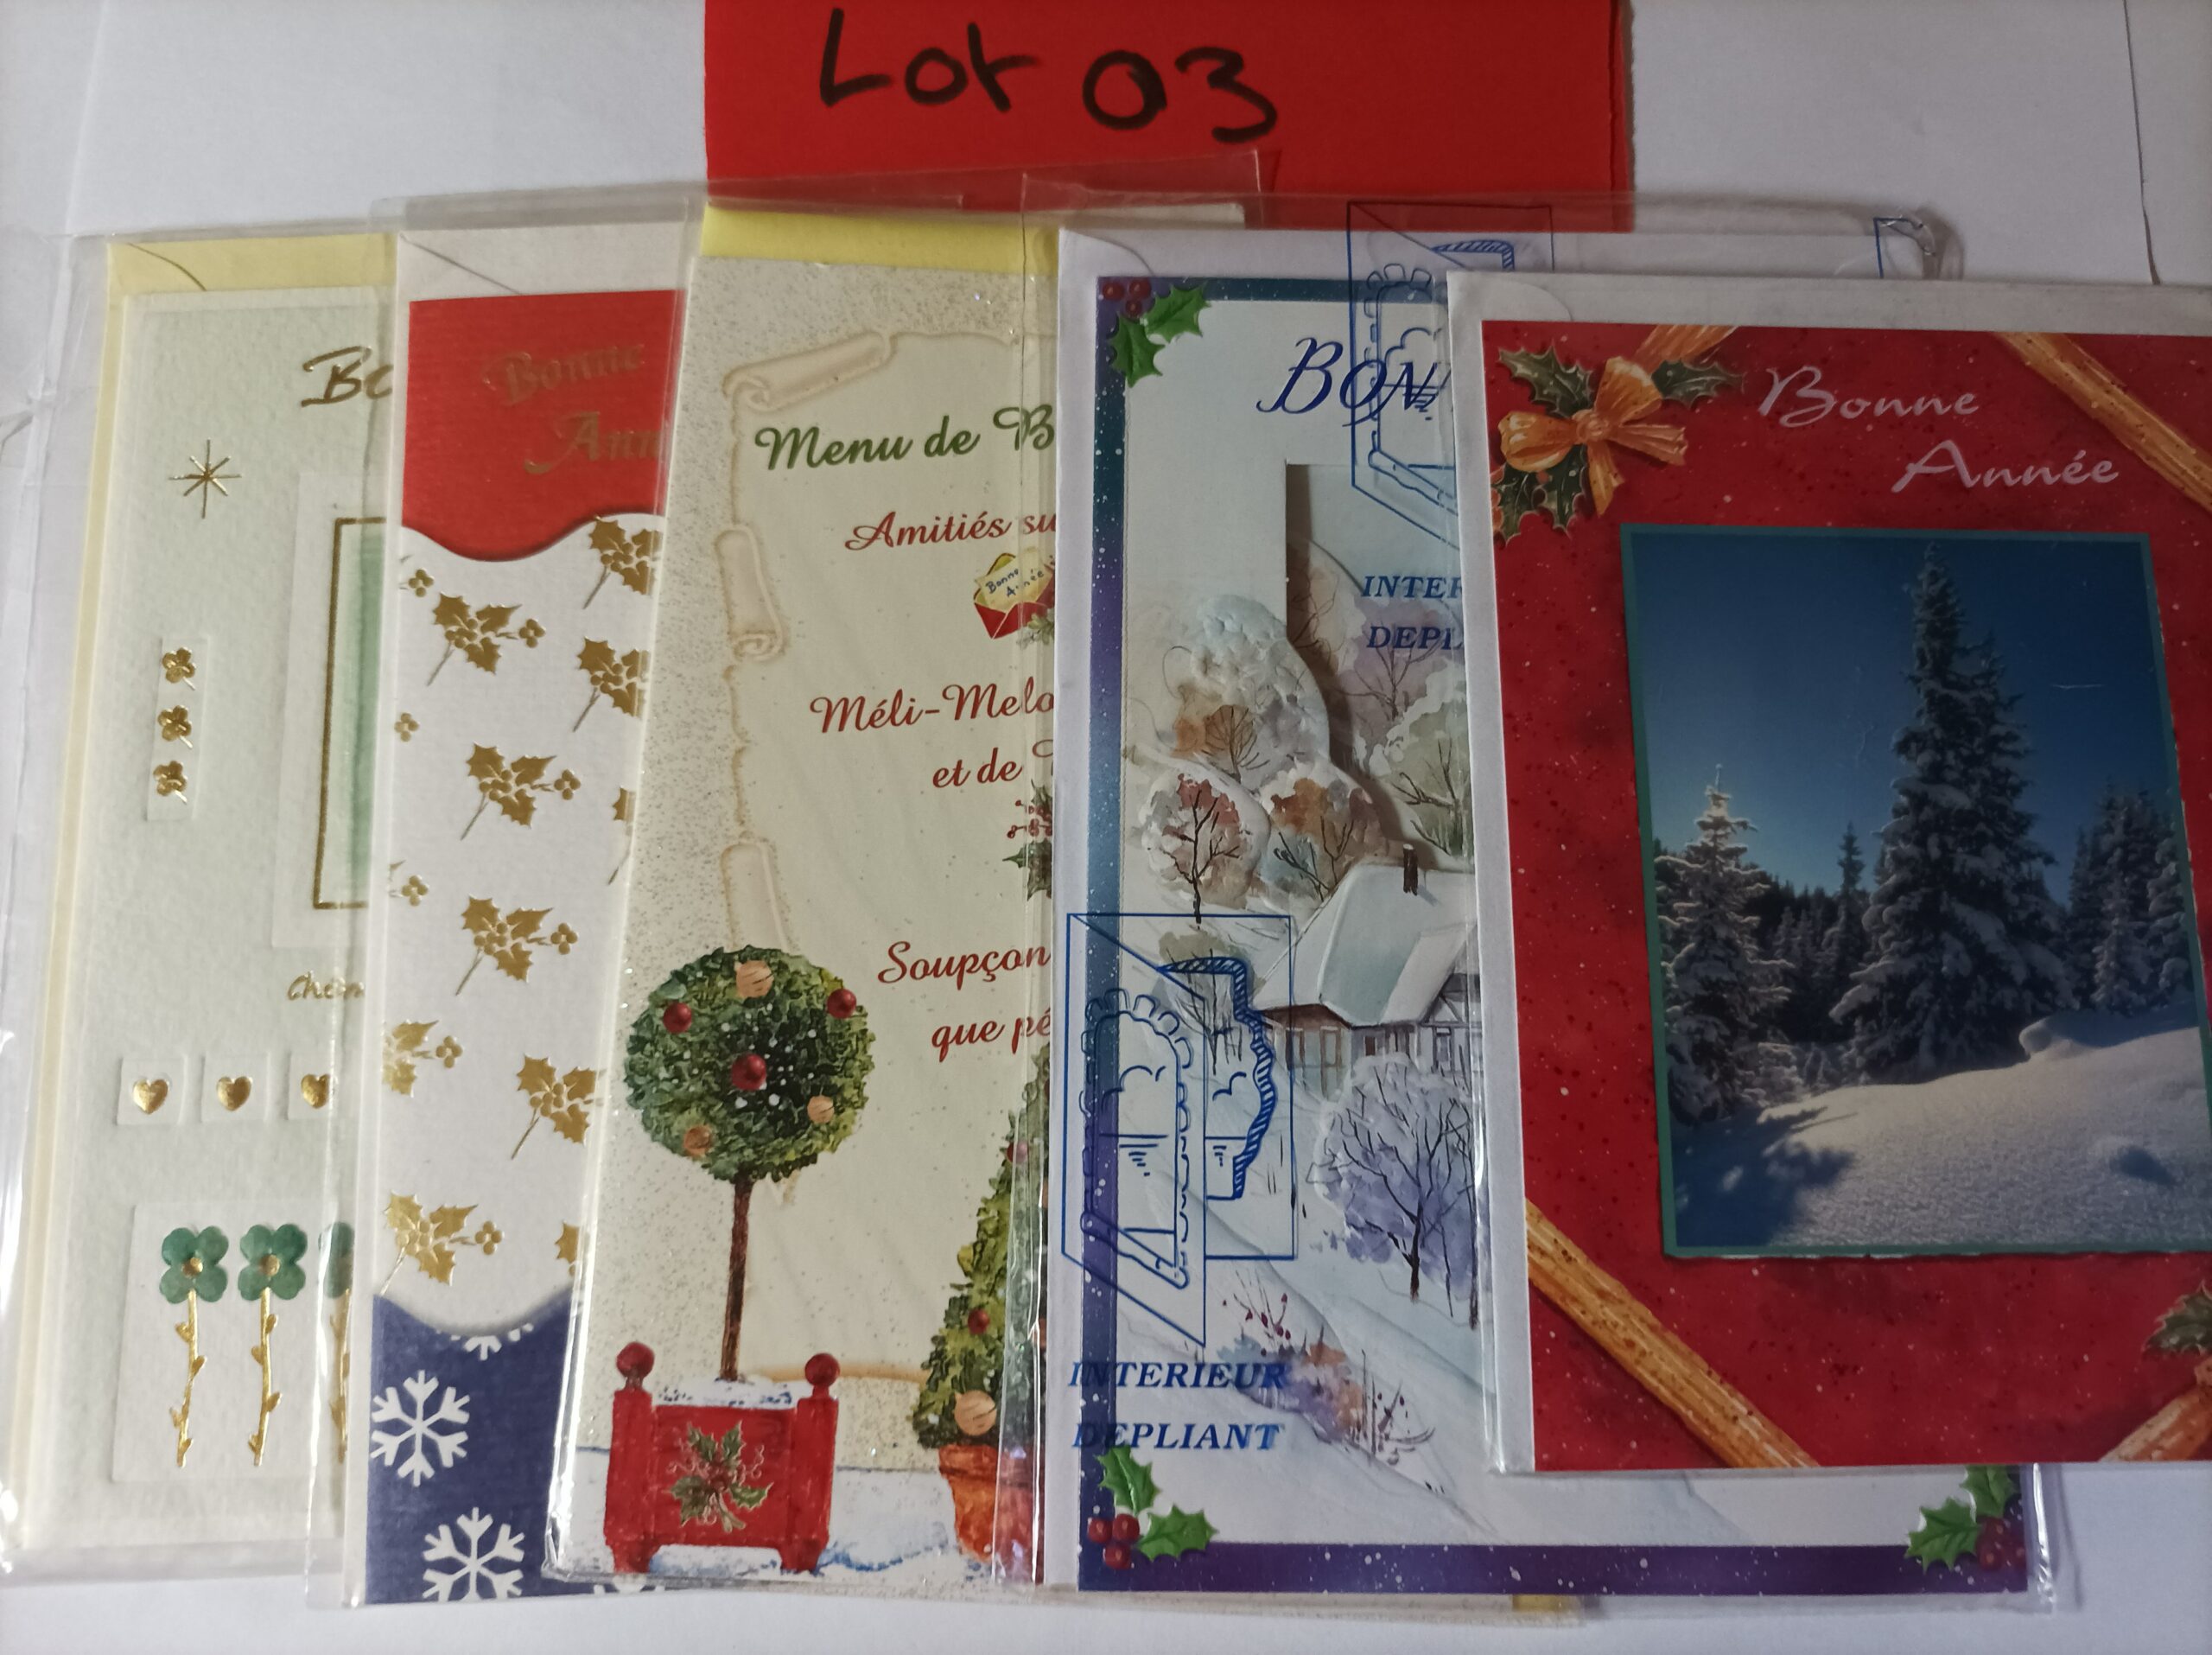 Lot de 5 cartes postales + enveloppes bonne année (lot 03)